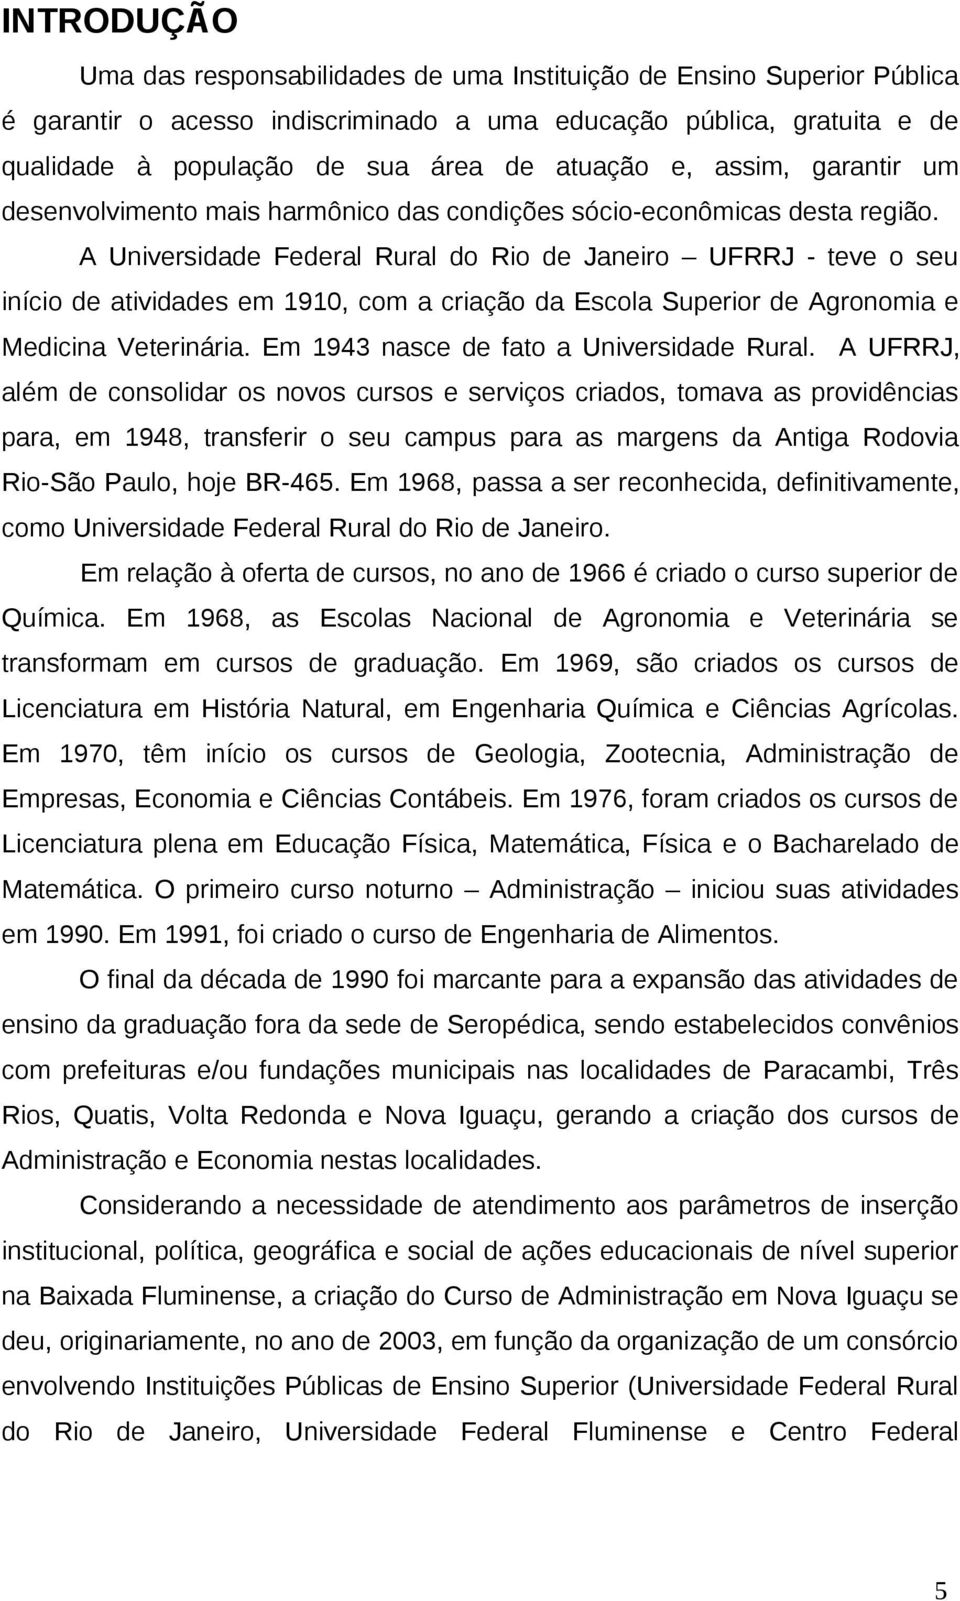 A Universidade Federal Rural do Rio de Janeiro UFRRJ - teve o seu início de atividades em 1910, com a criação da Escola Superior de Agronomia e Medicina Veterinária.